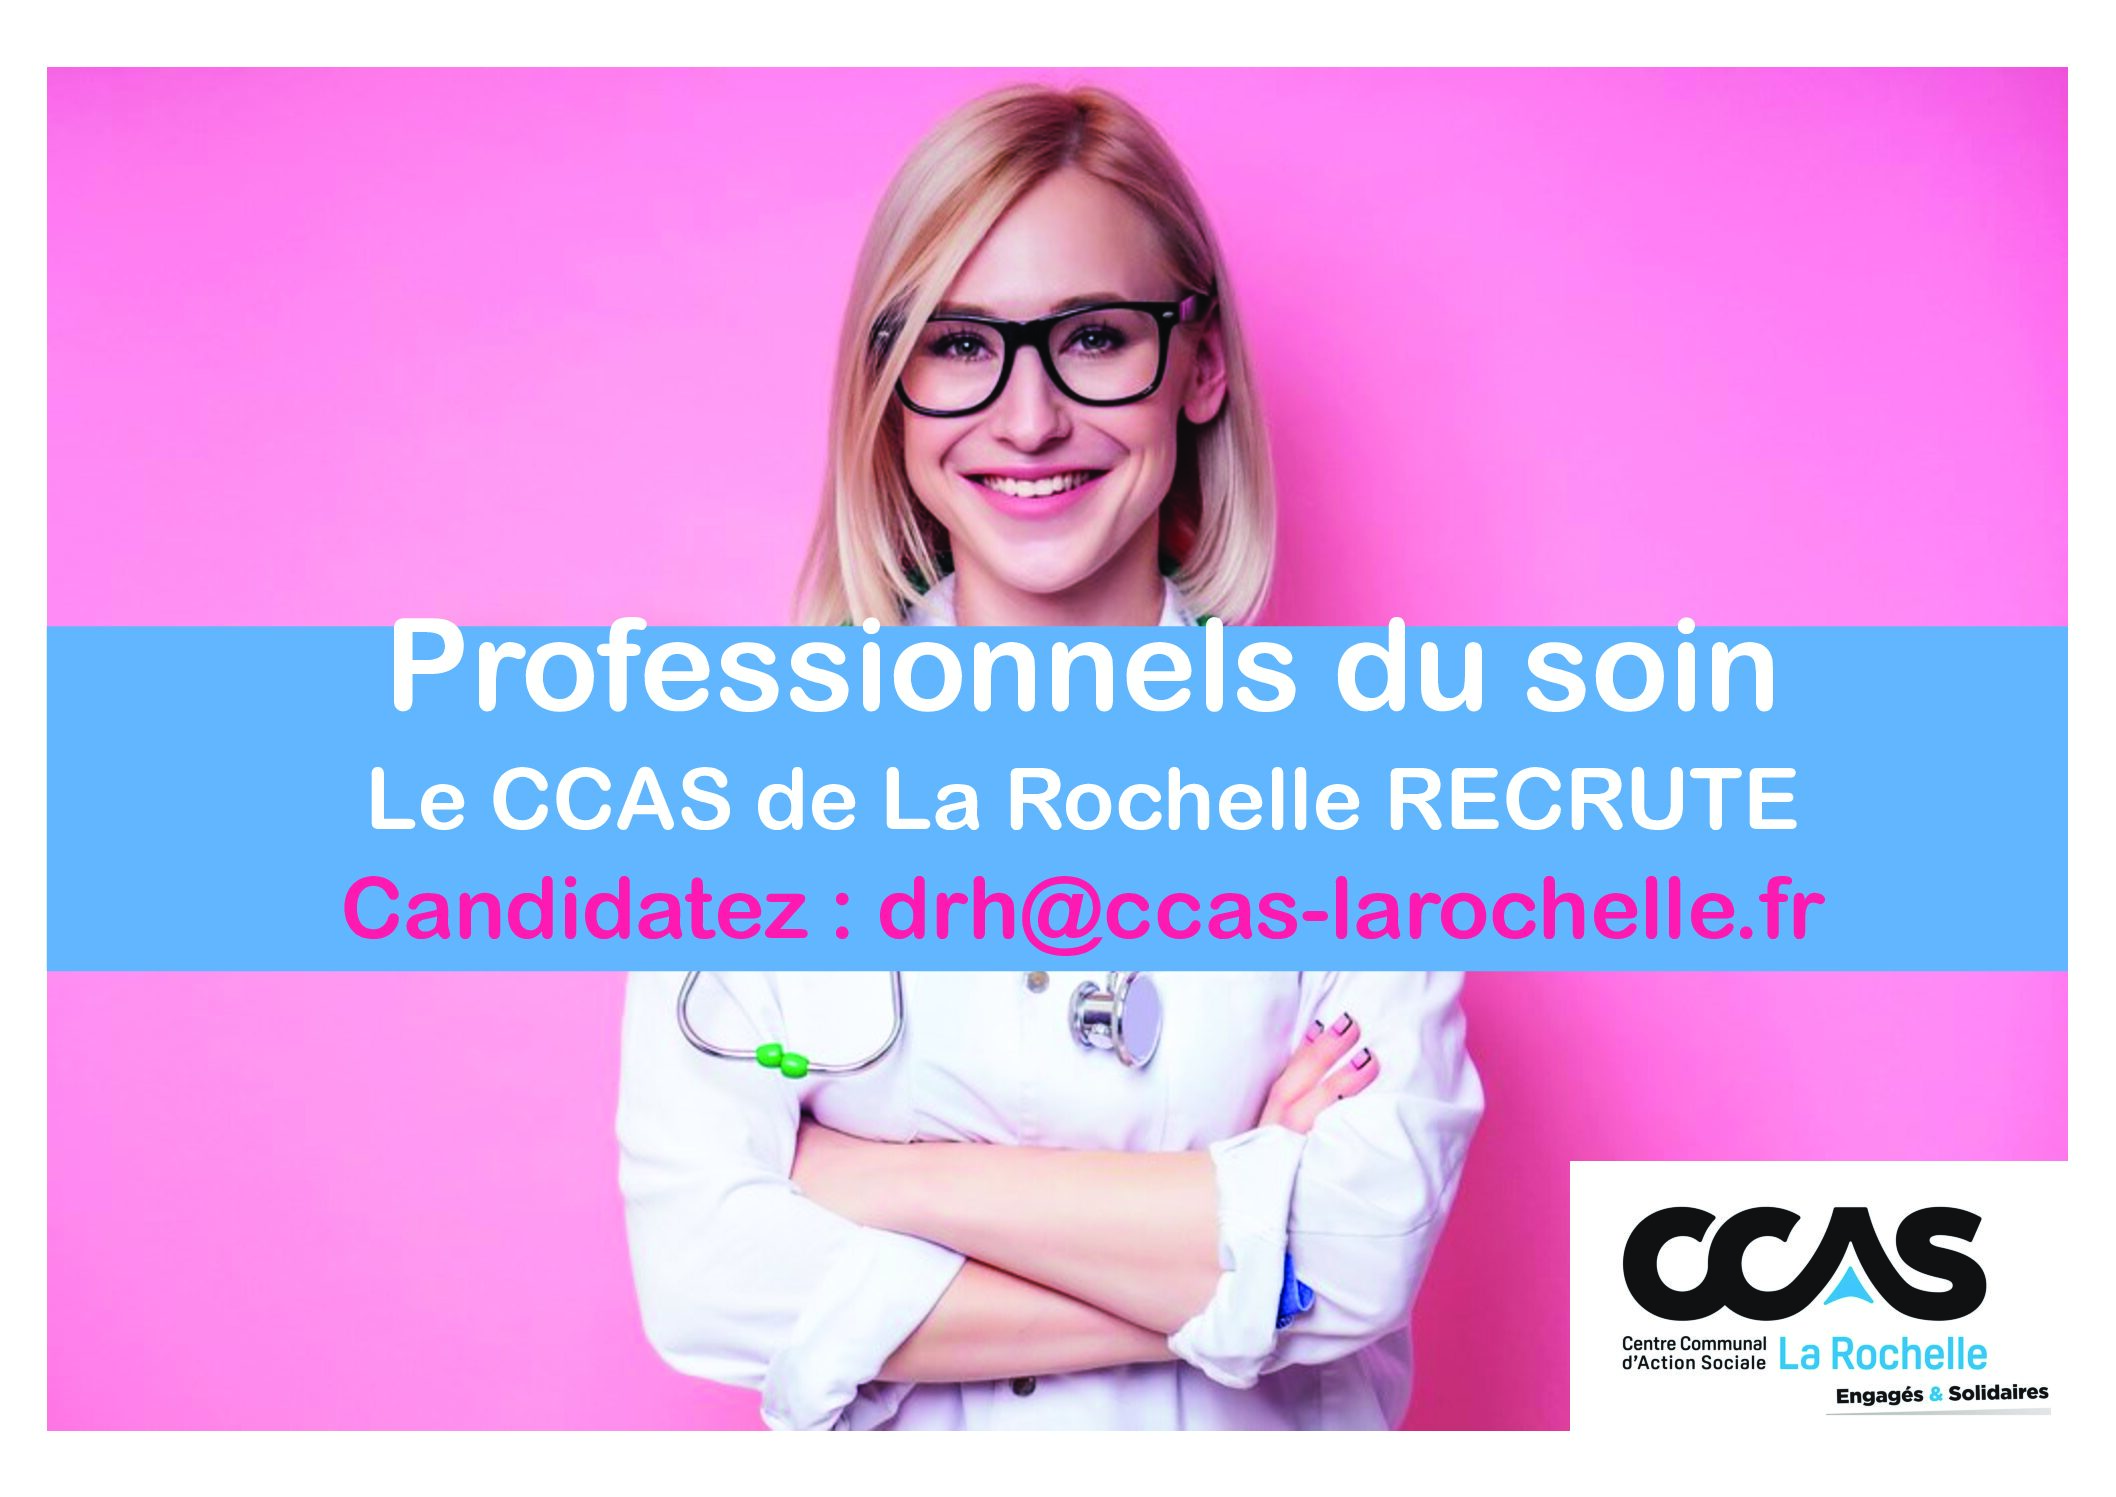 Le CCAS de La Rochelle recrute !!!